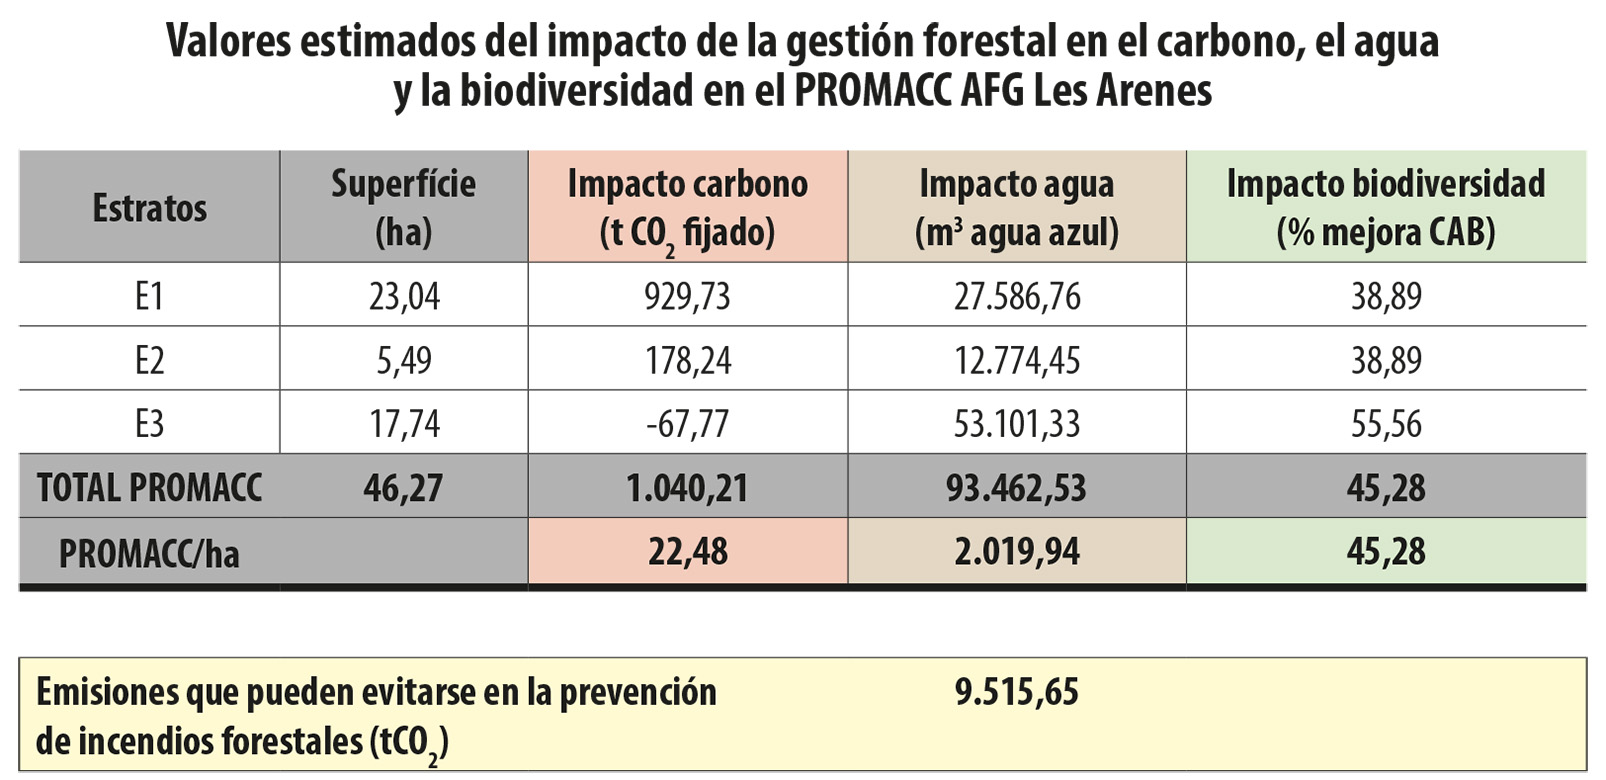 Impacto de la gestión forestal en el carbono, agua y biodiversidad en el PROMACC Les Arenes